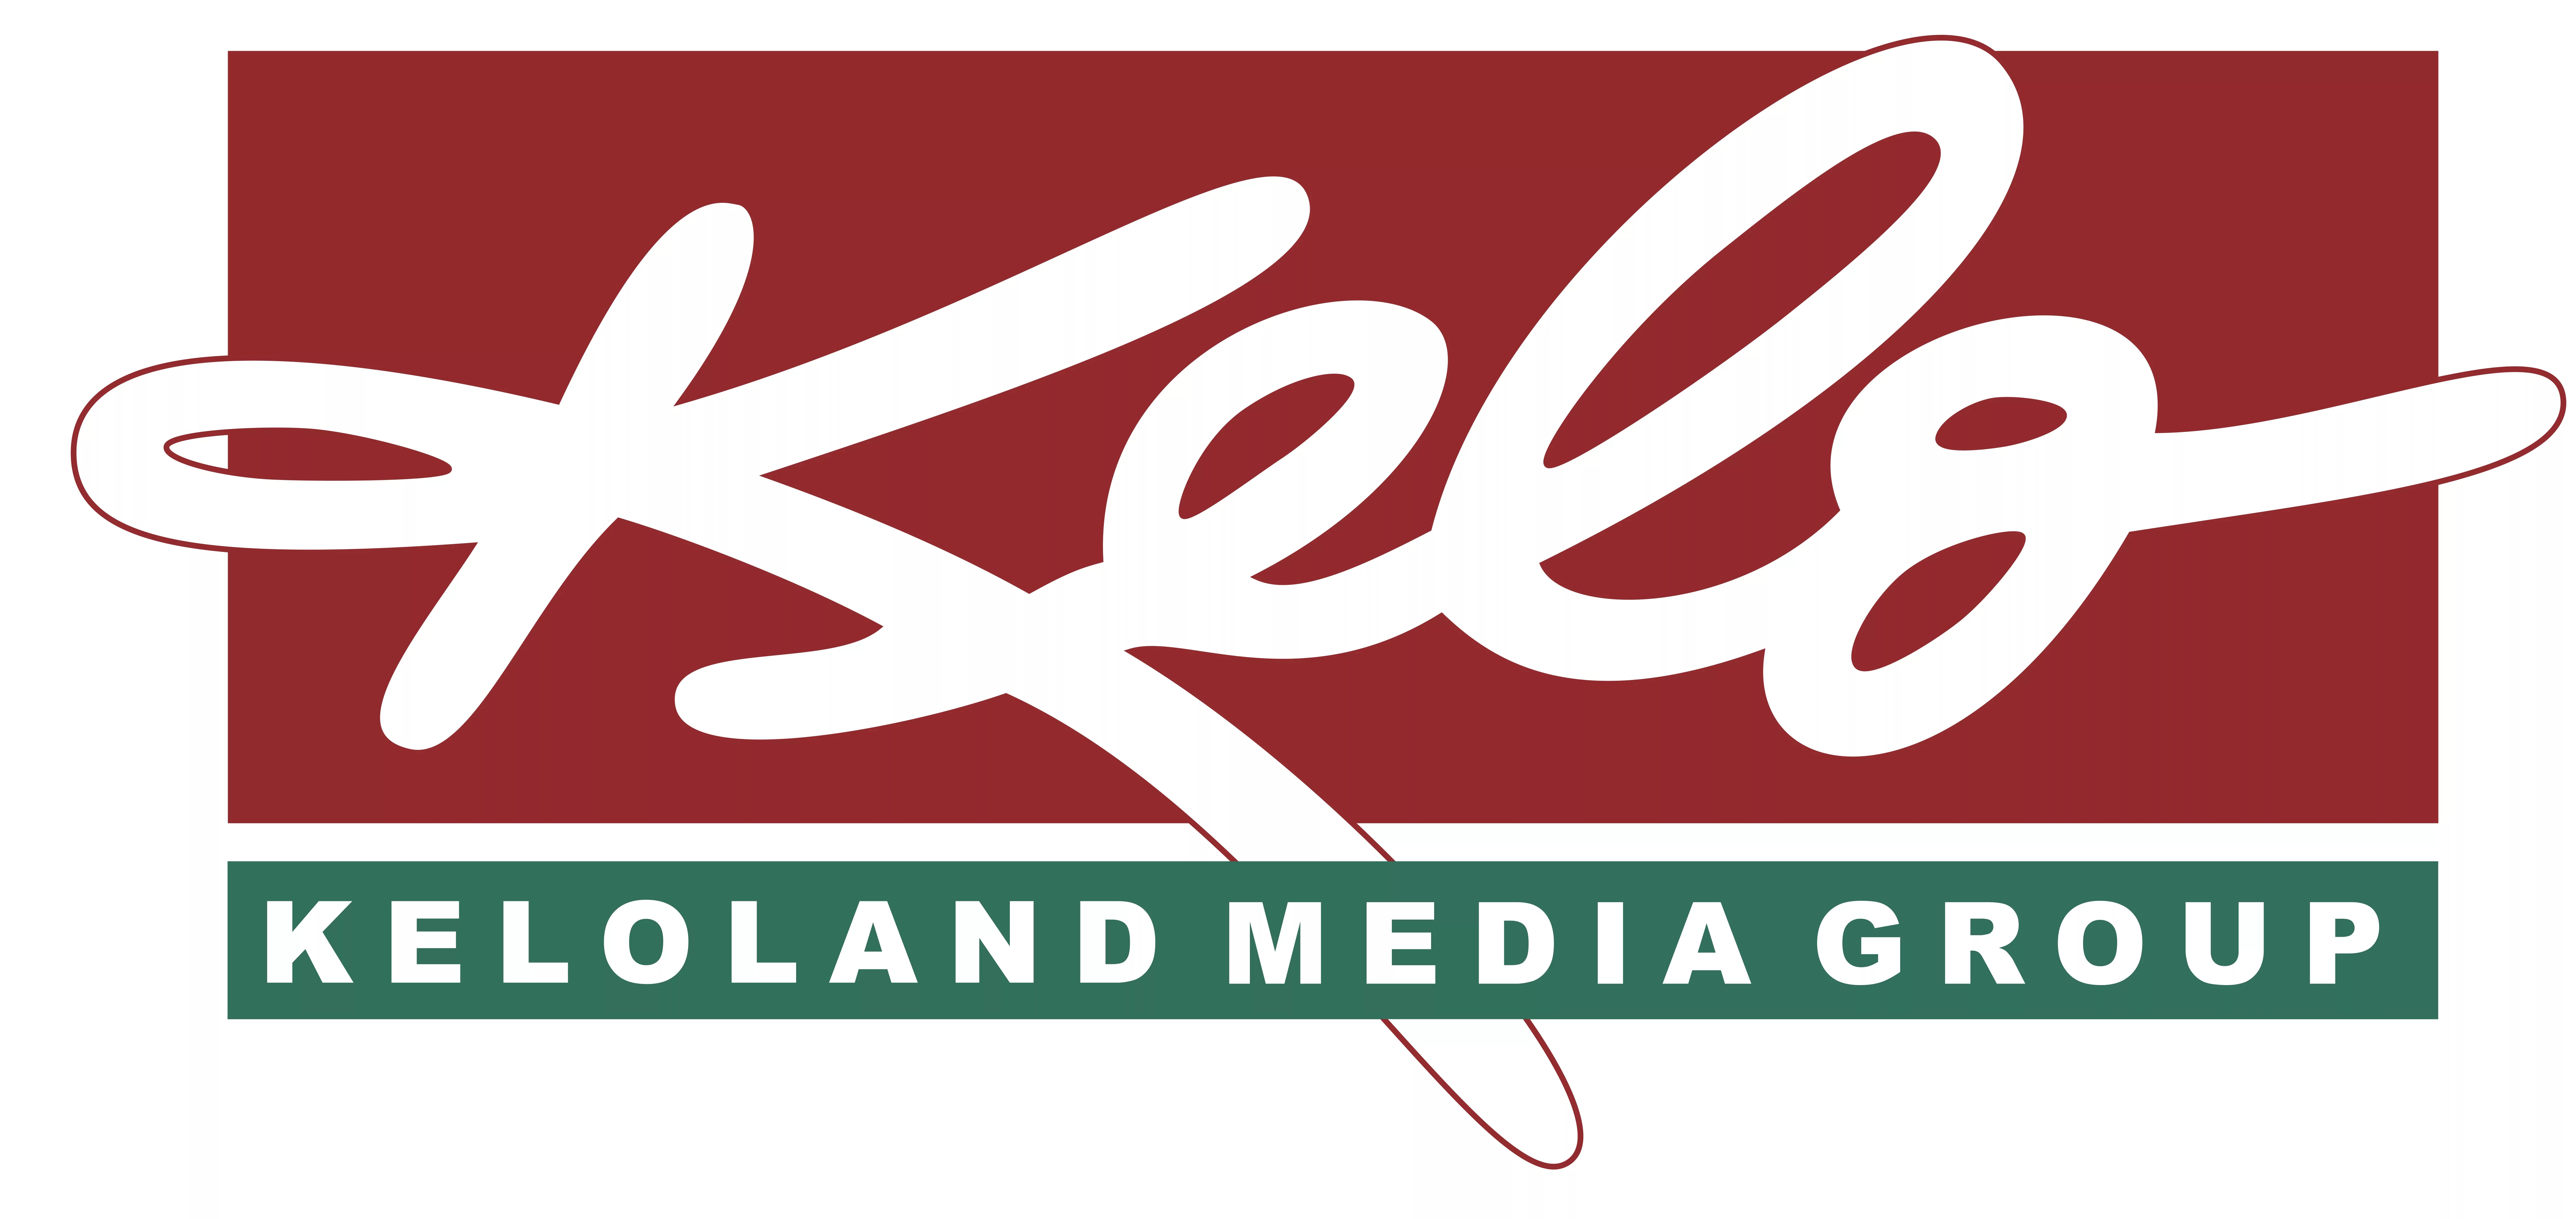 KELOLAND media group logo